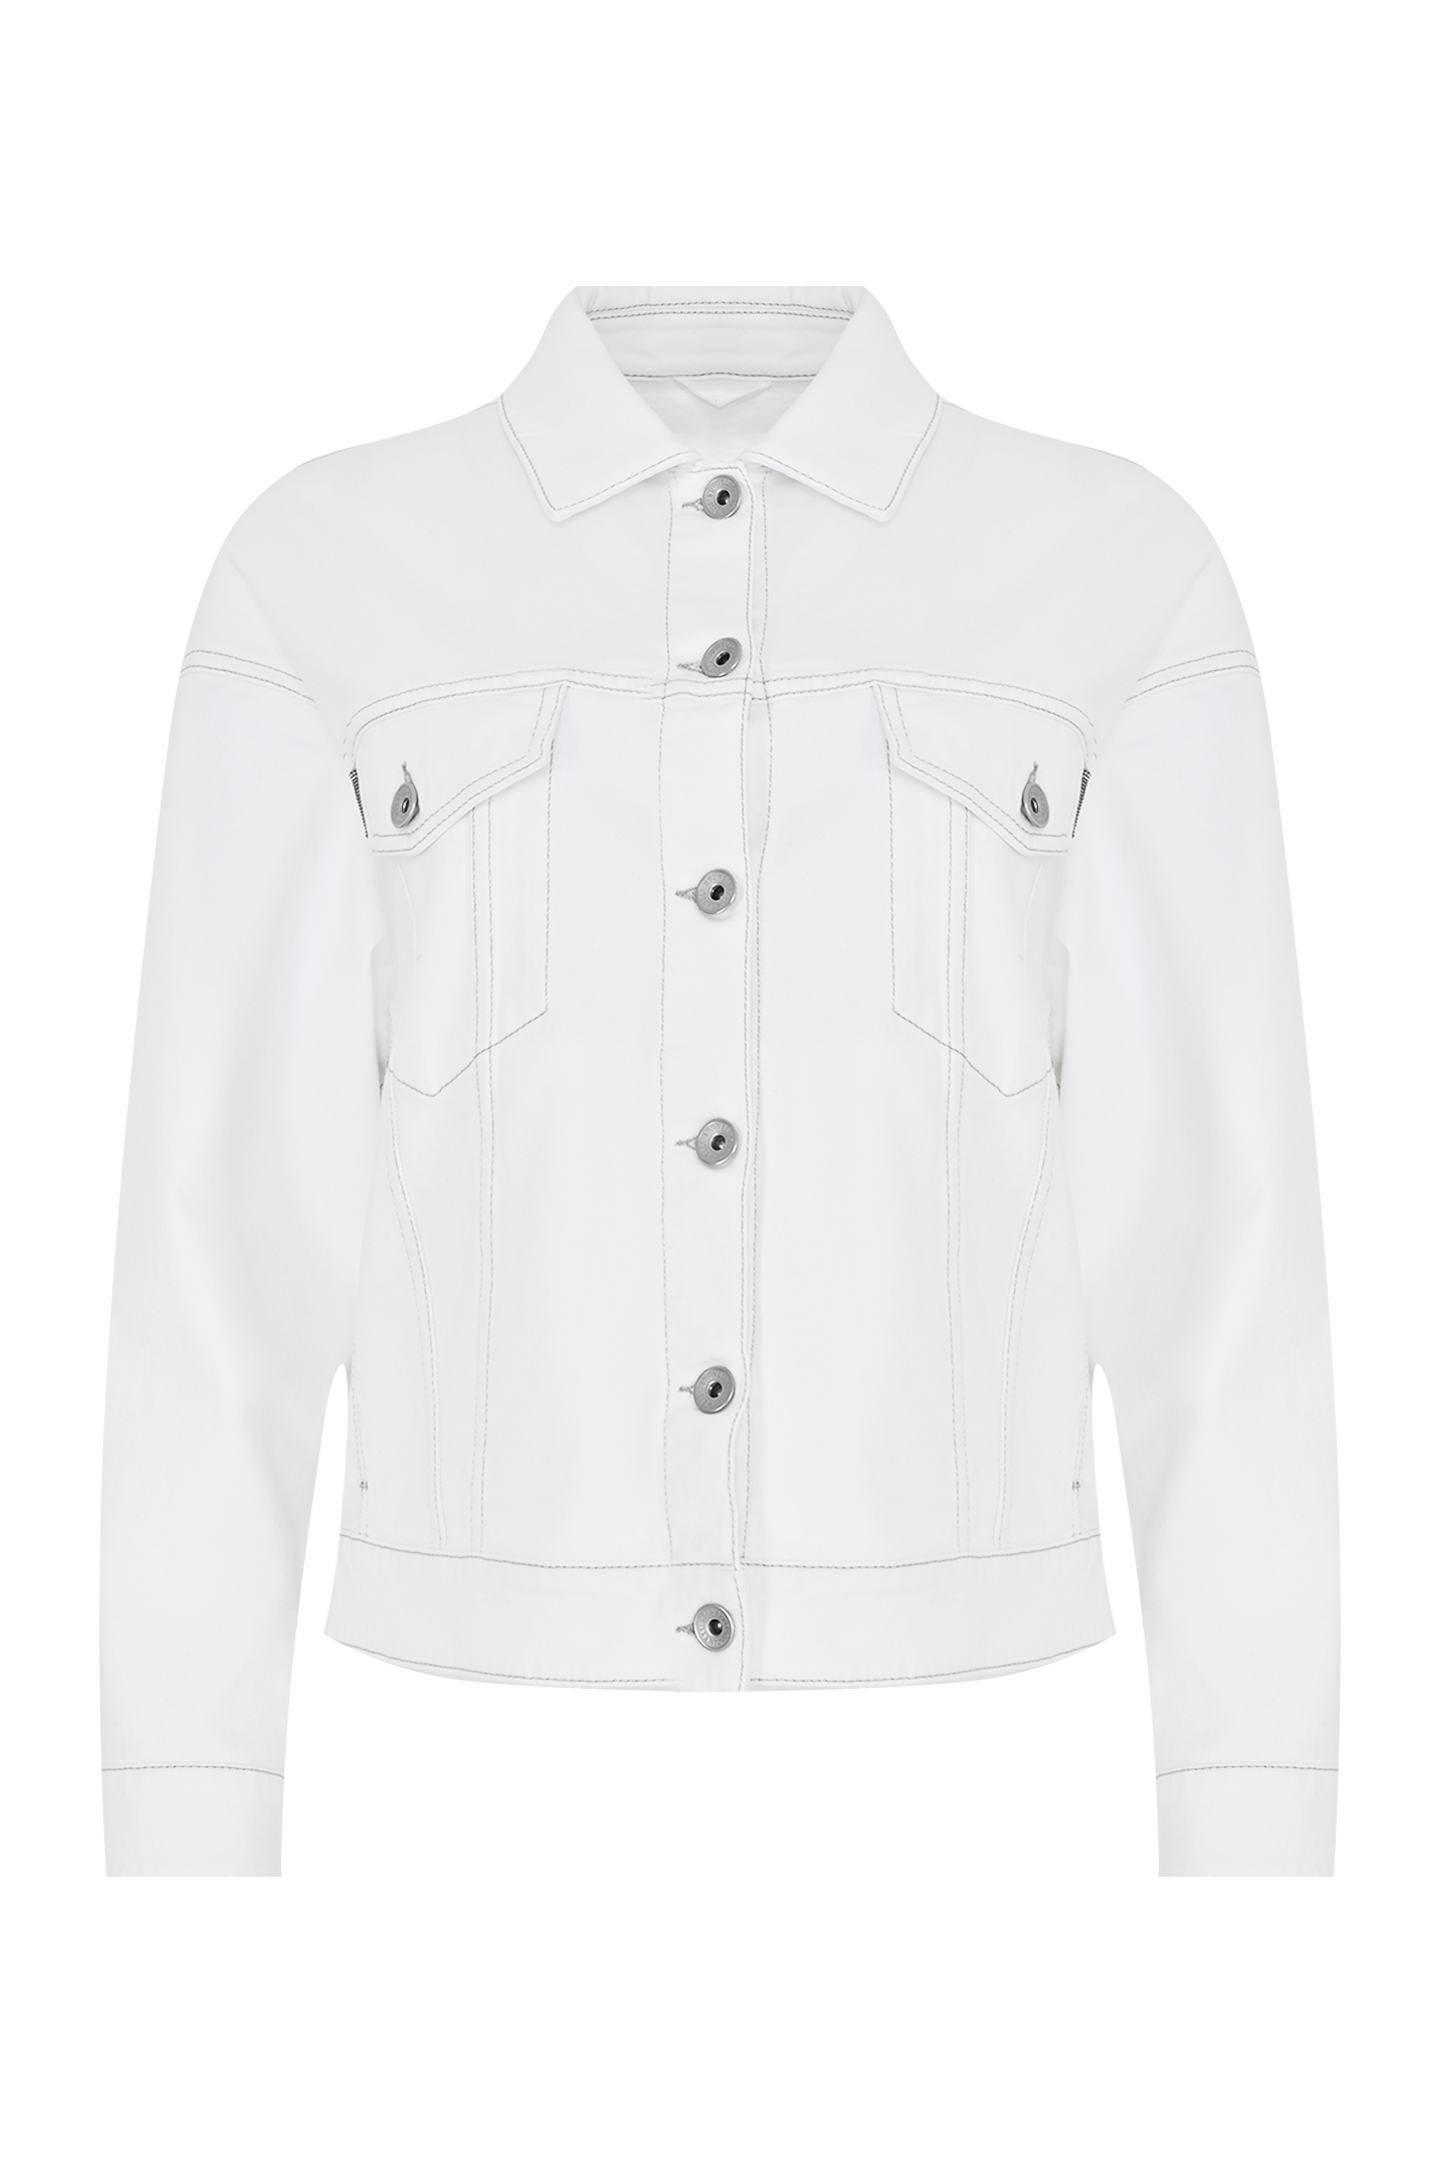 Джинсовая куртка с карманами BRUNELLO  CUCINELLI MB0572989, цвет: Белый, Женский